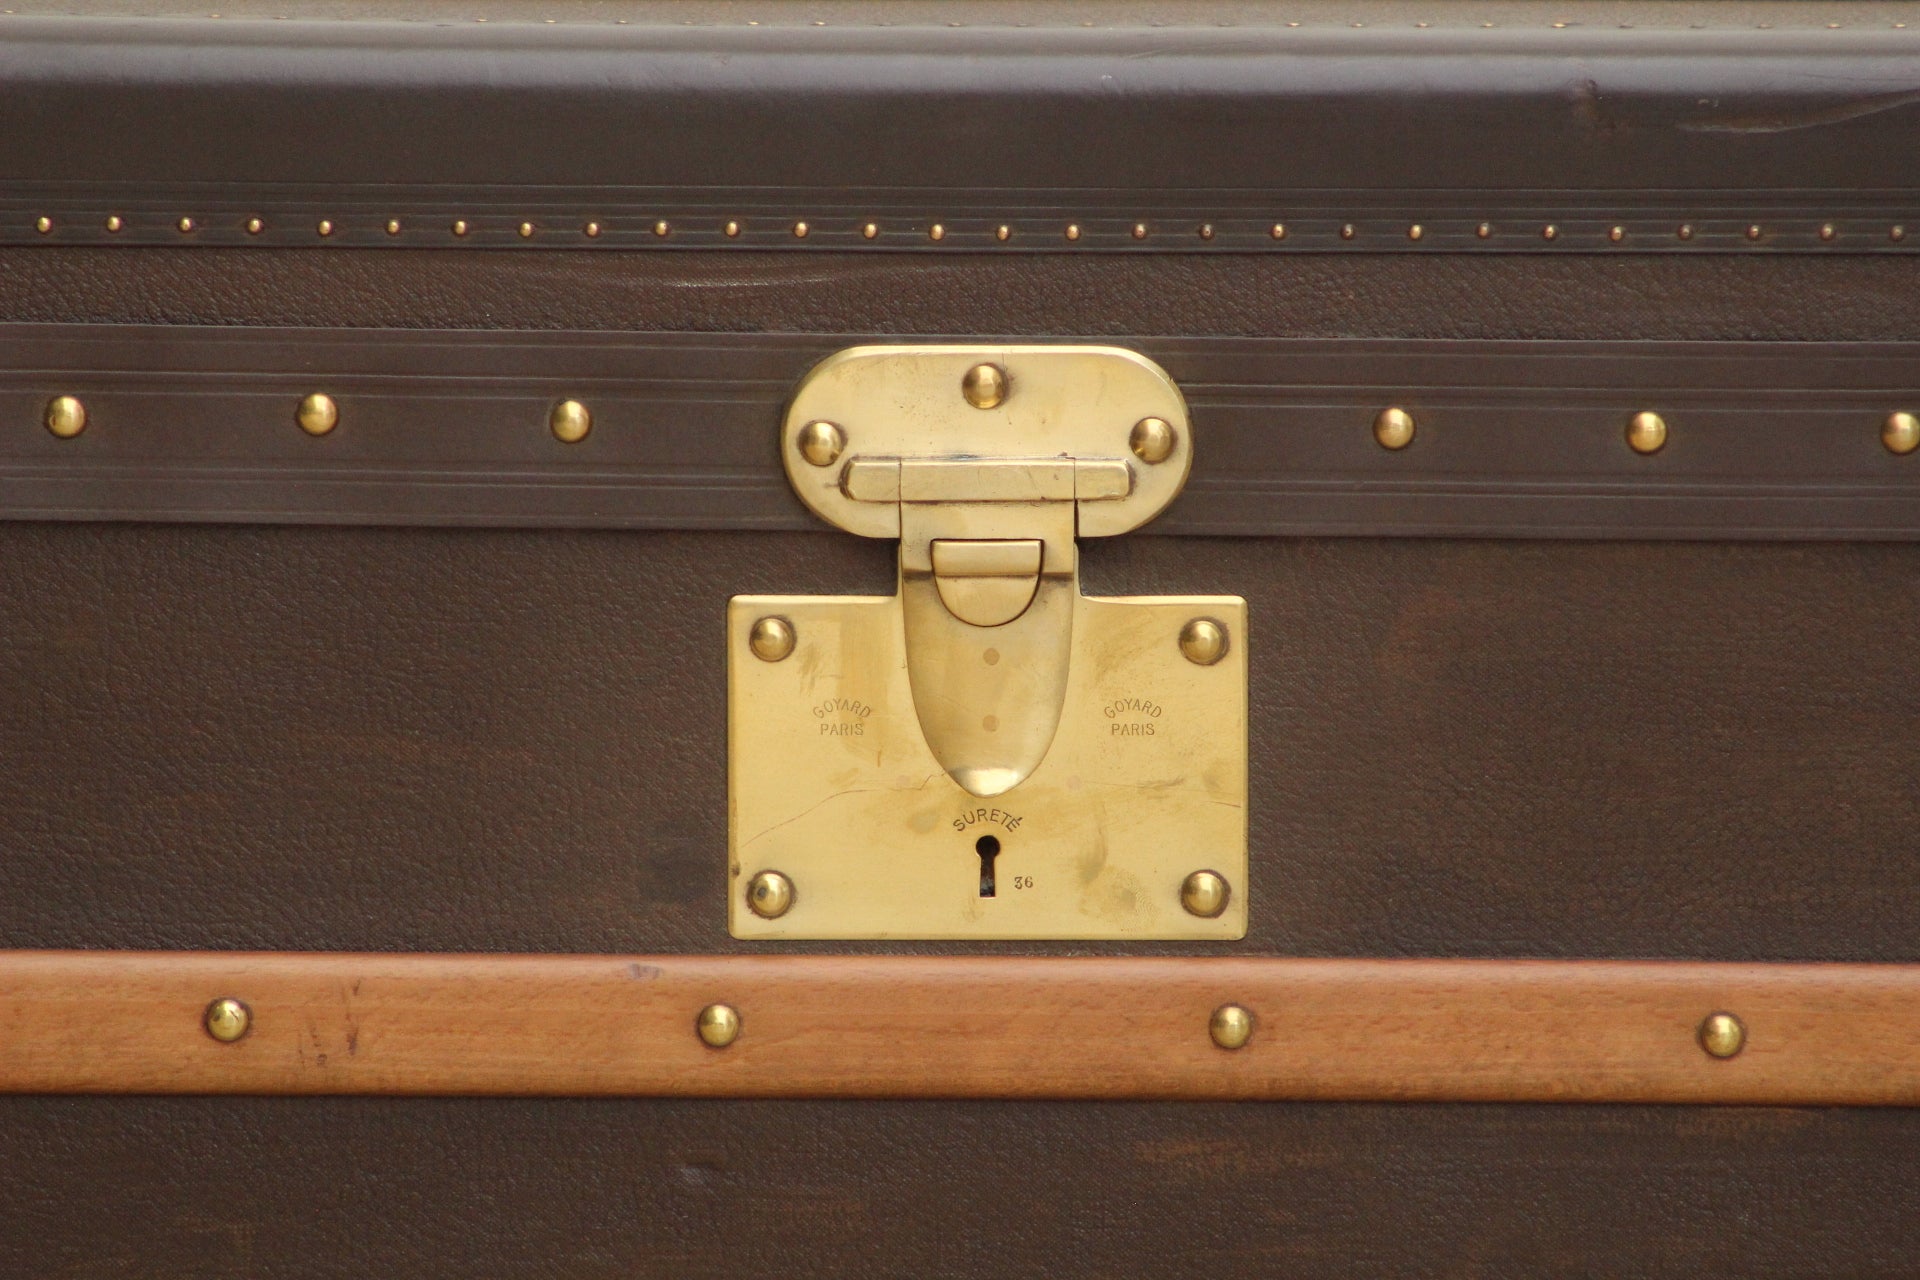 GOYARD cabin trunk in goyardine with original keys, the …